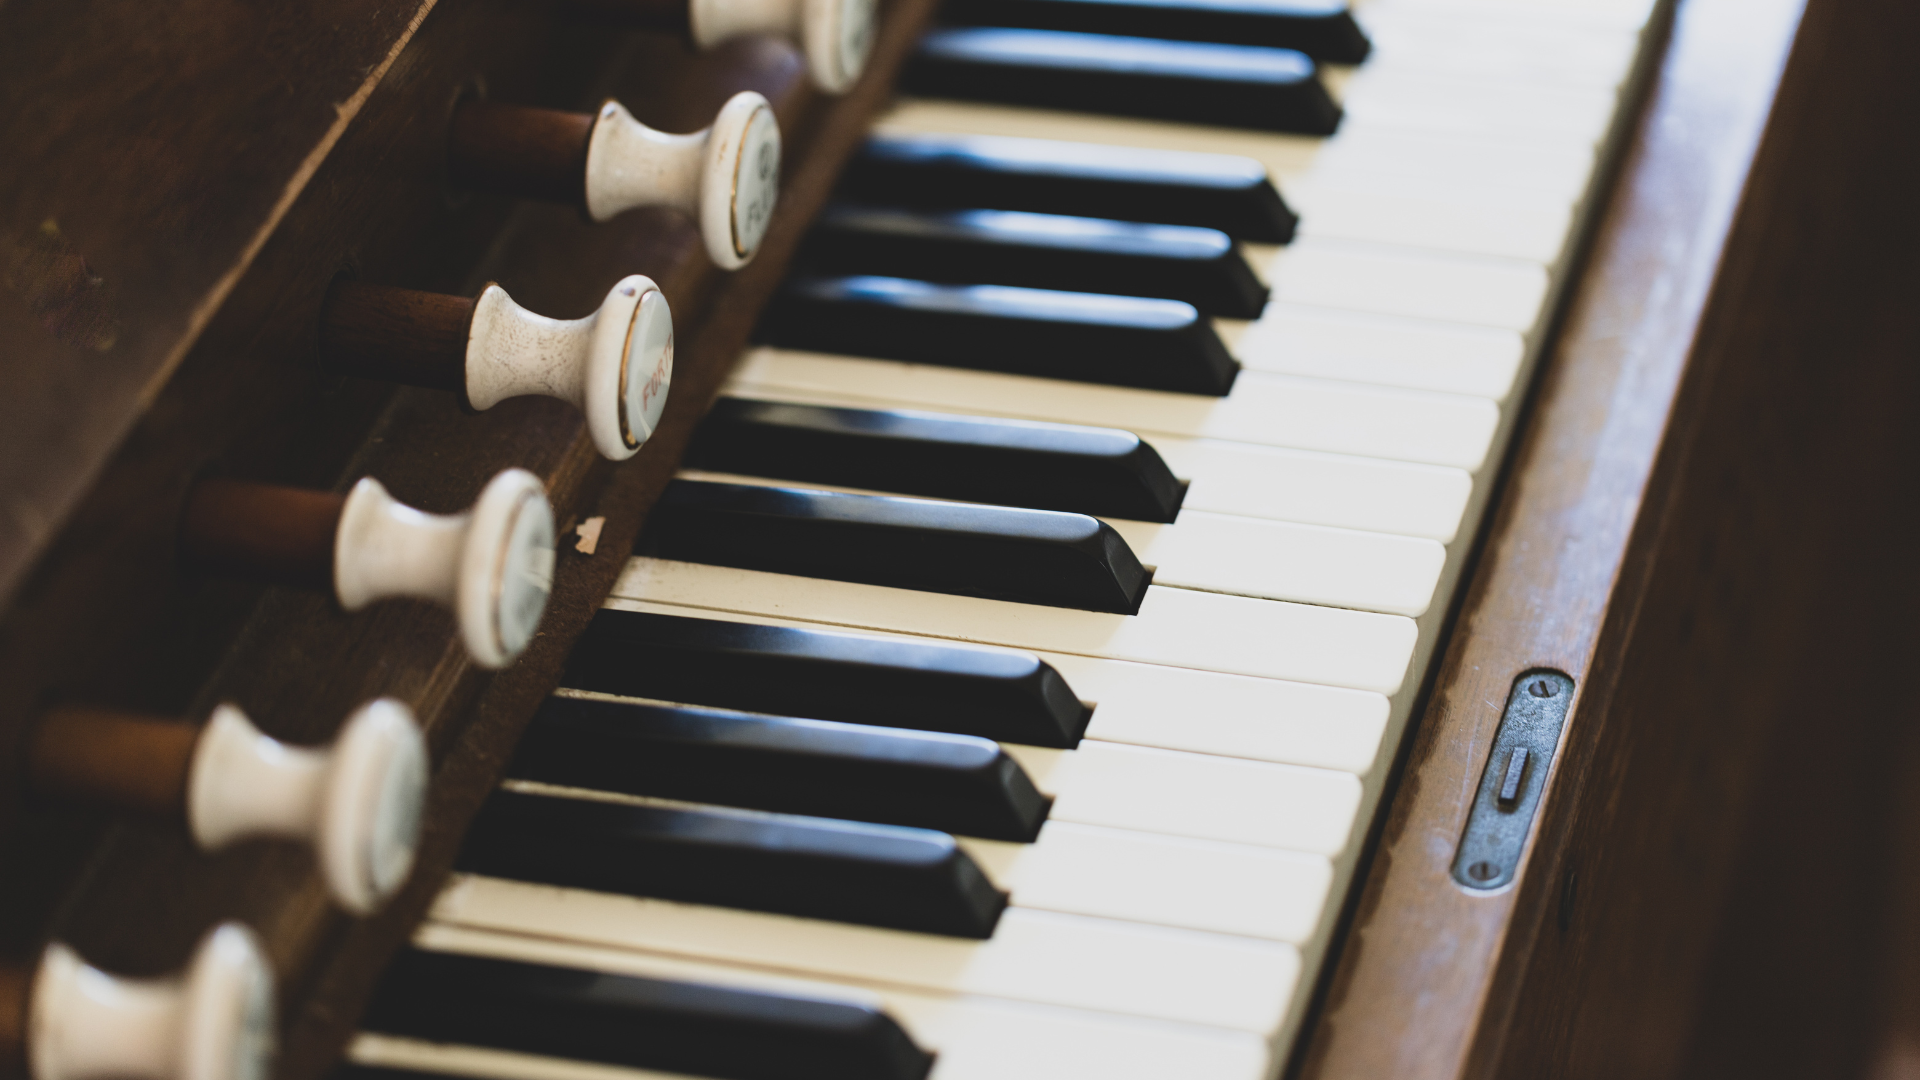 wiener buckow-orgel wird restauriert: 900.000 euro kosten